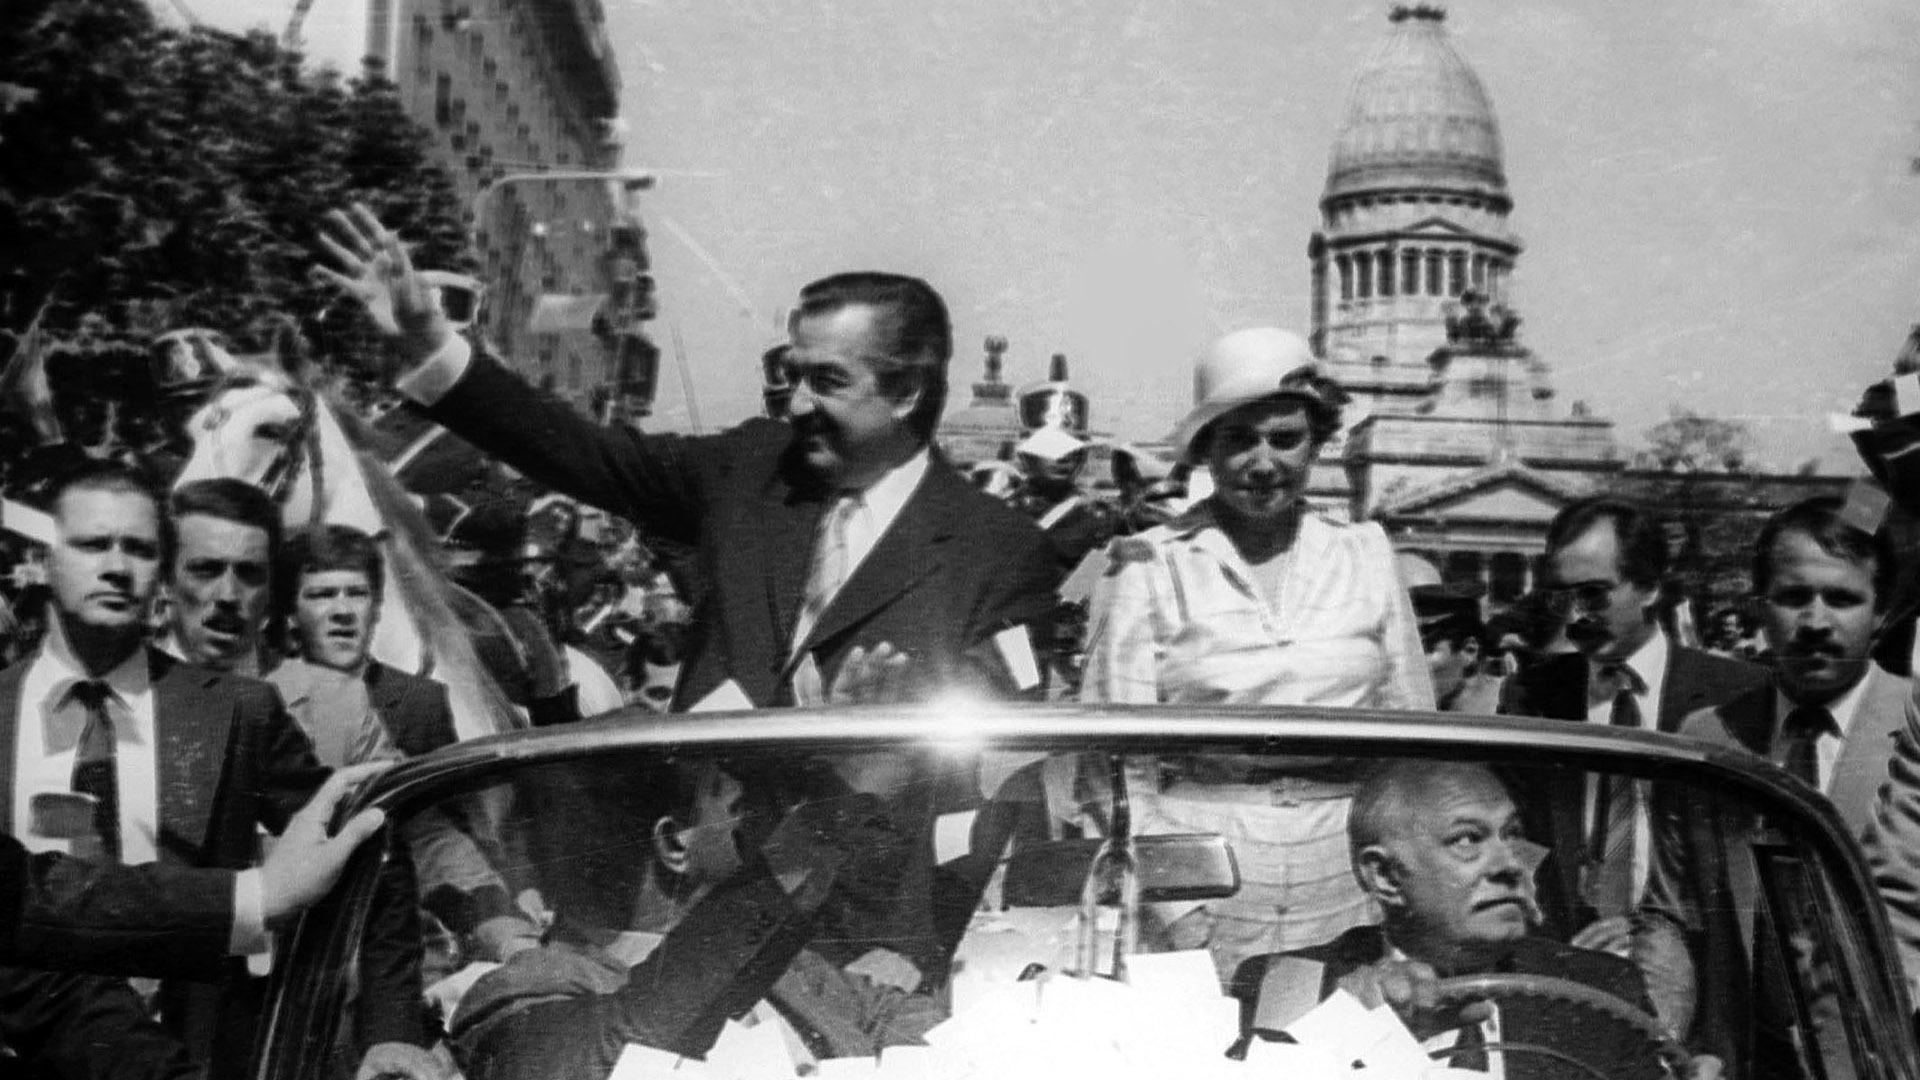 Asunción de Raúl Alfonsín. El país terminaba con los oscuros y terribles años de la dictadura militar